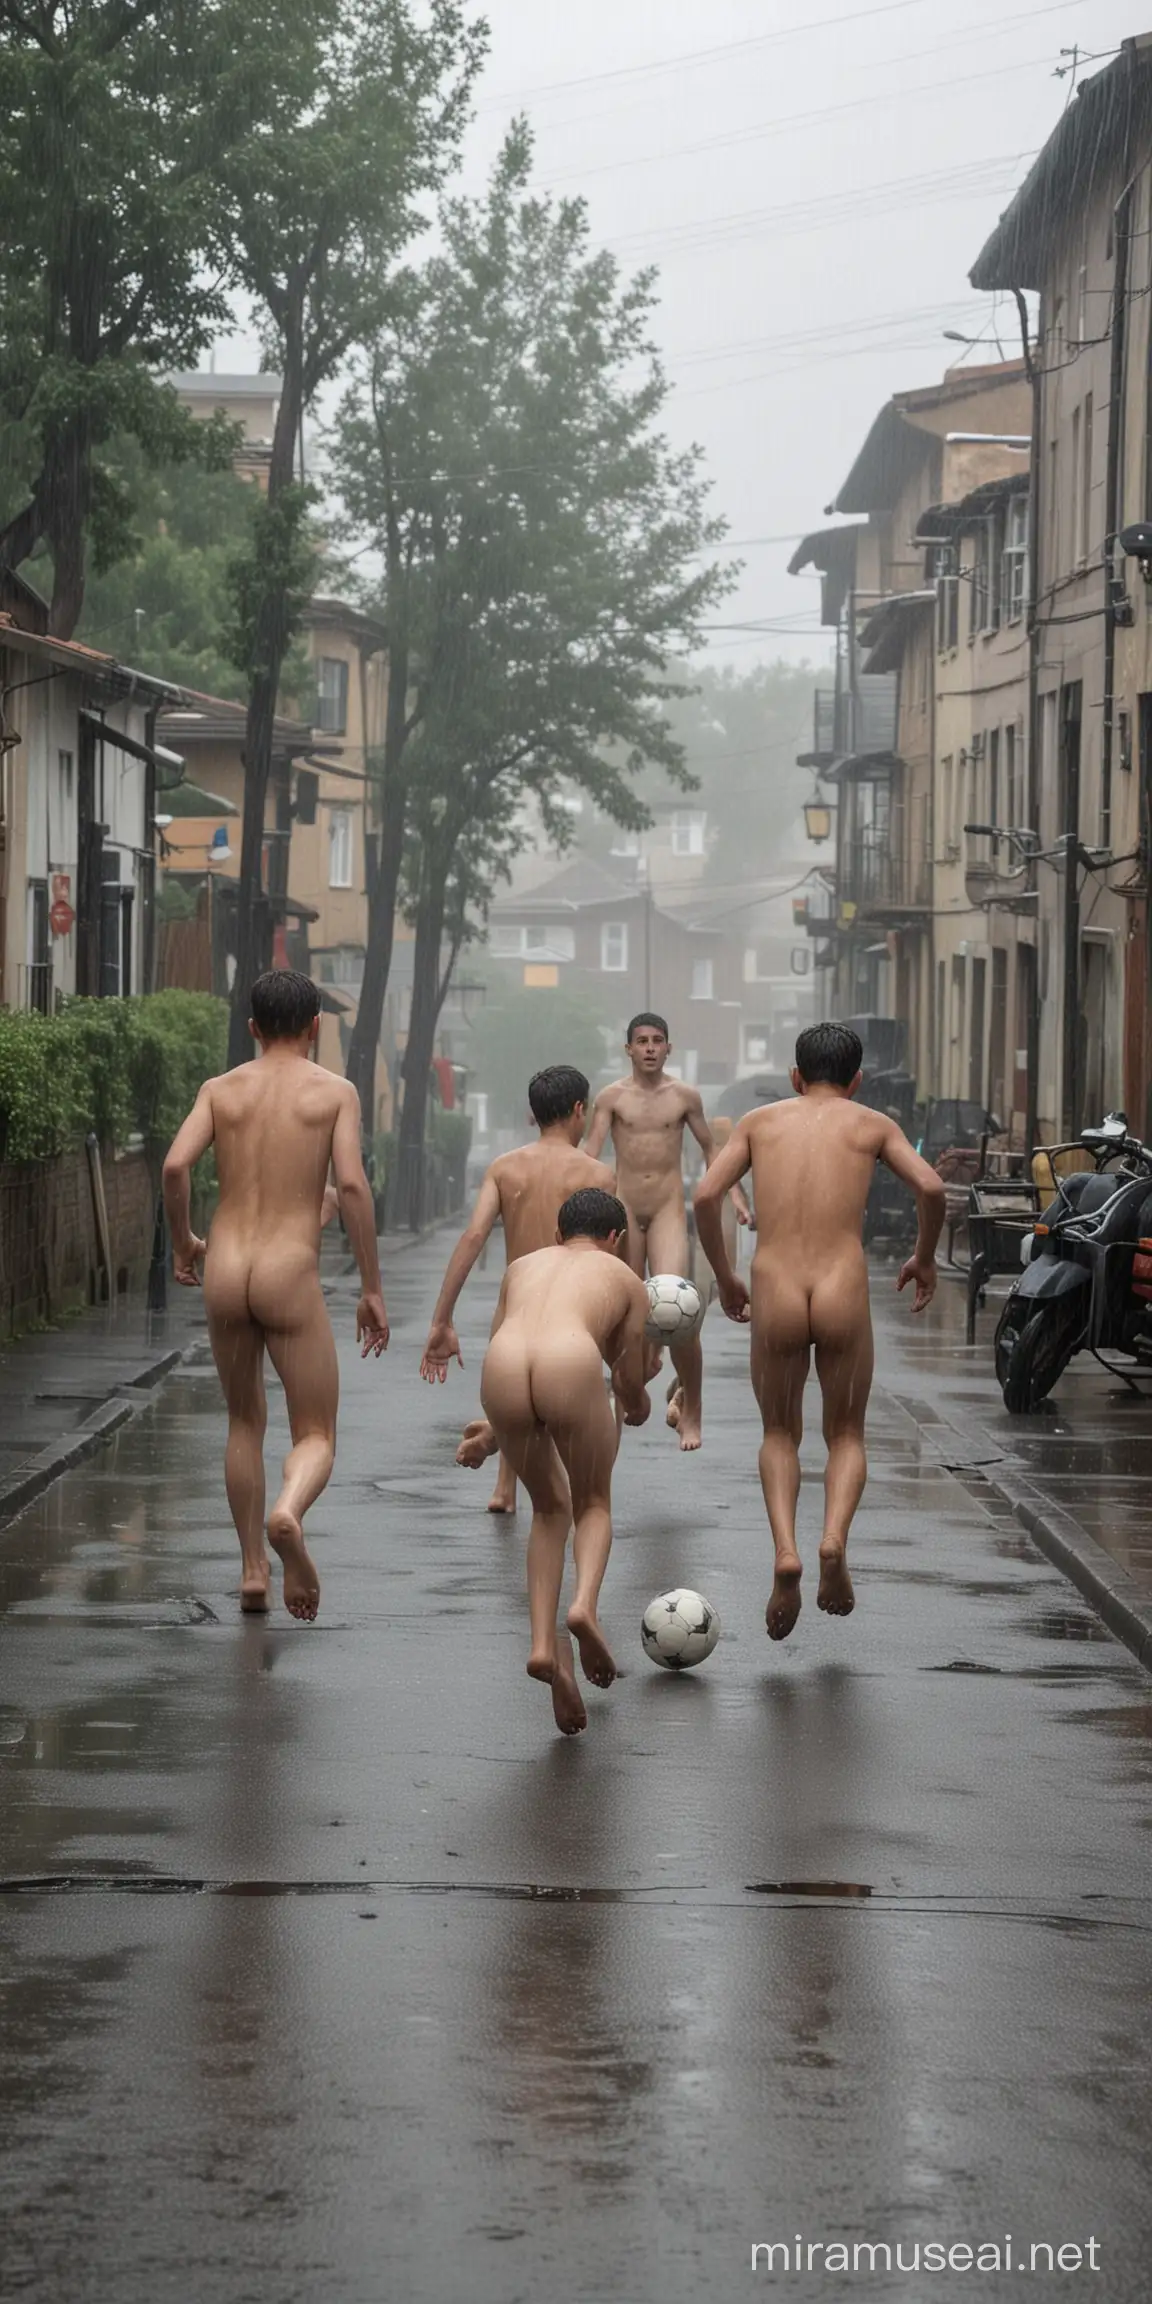 2 rapazes de 18 anos, nus, disputam bola de futebol em jogo no meio da rua. Um deles com o pé sobre a bola empurra o outro. Ao redor tem casas e árvores. Chovendo.